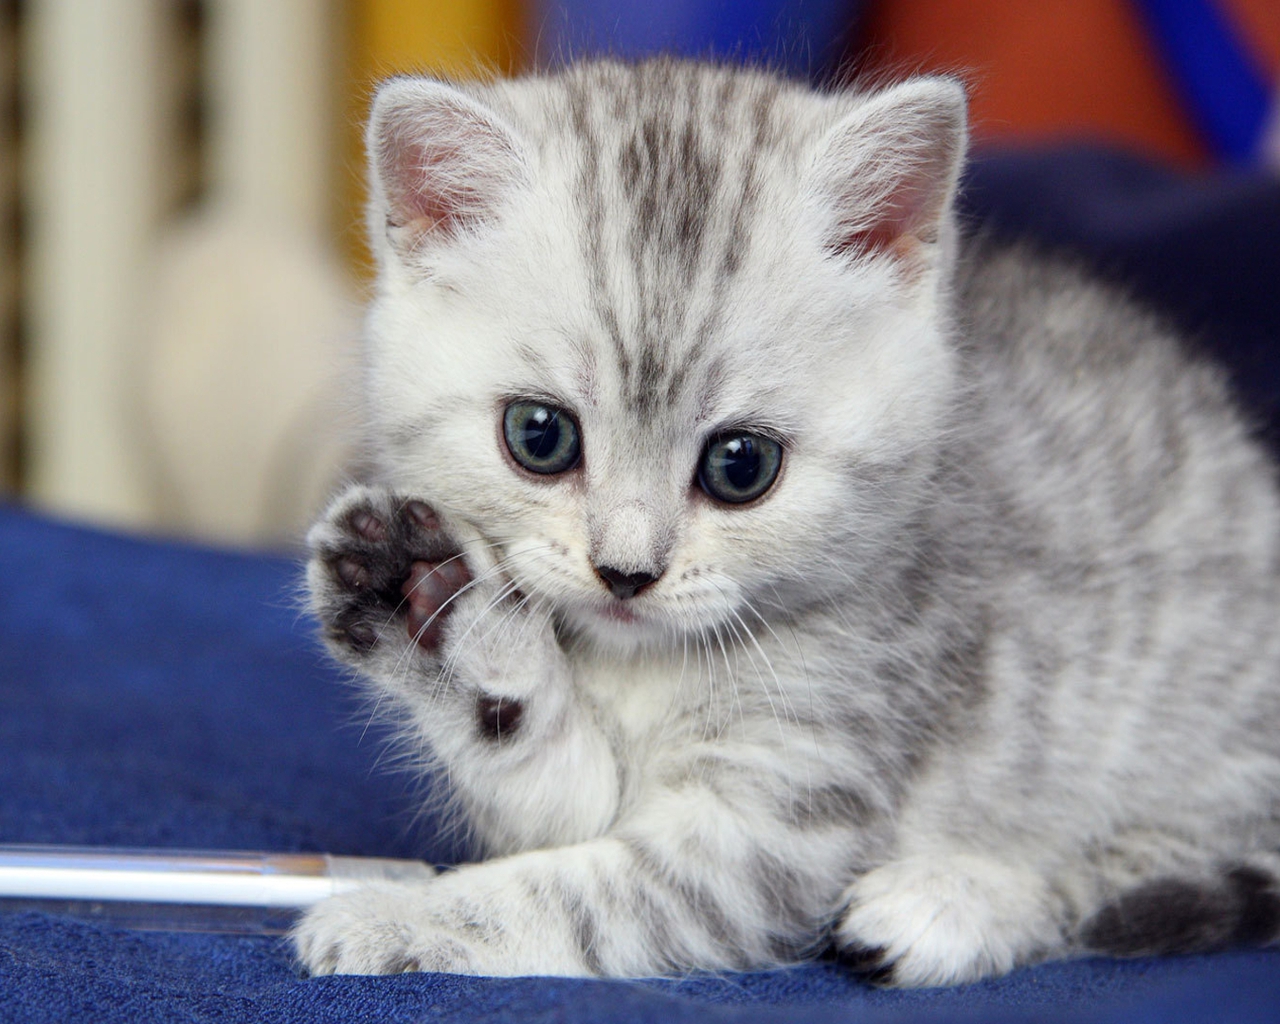 Cute Kitten Saying Hello